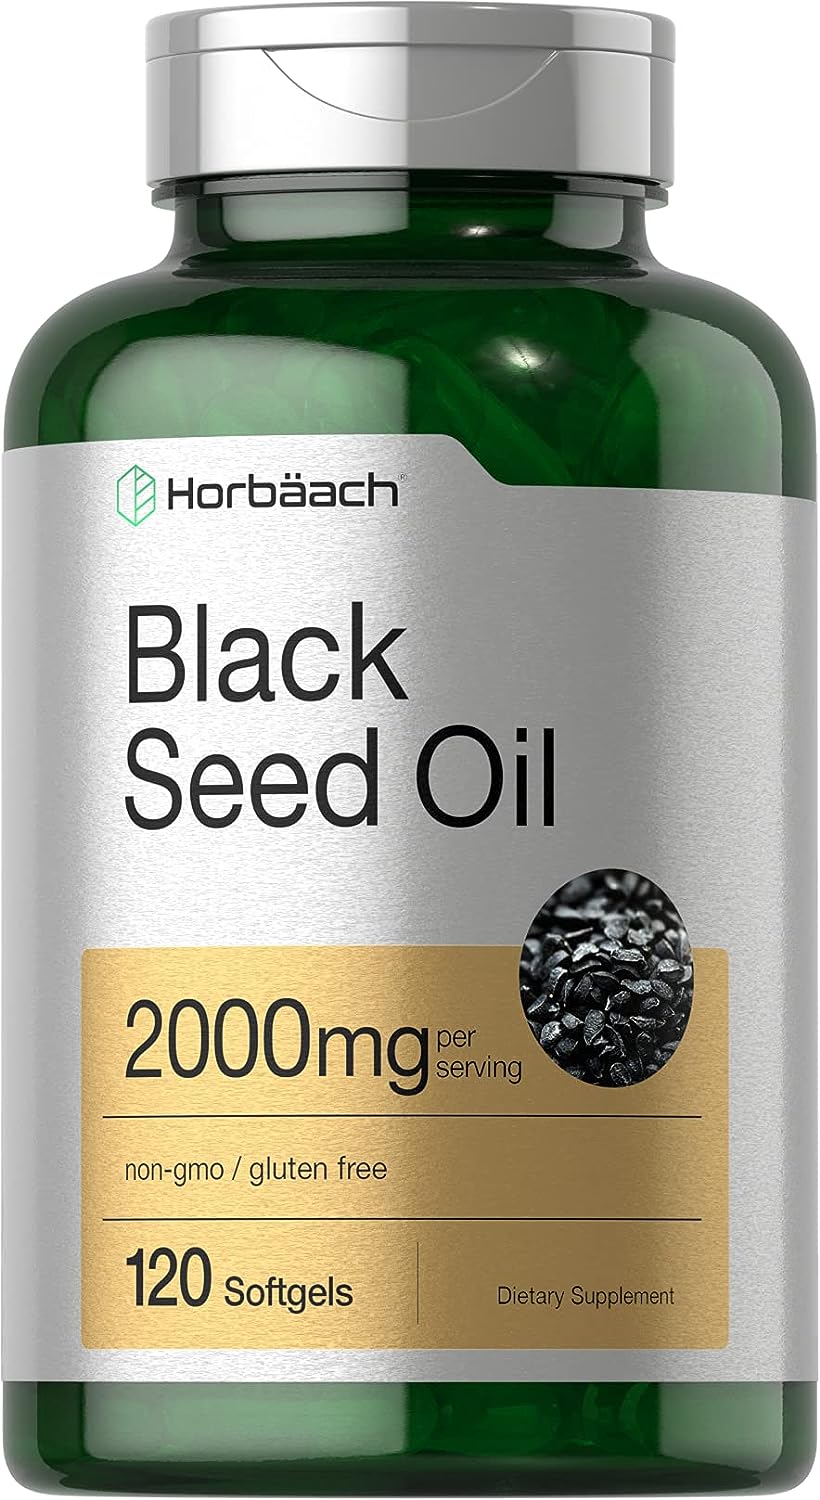 Horbach Black Seed Oil 2000mg | 120 Softgel Capsules | Cold Pressed Nigella Sativa Pills | Non-GMO, Gluten Free Supplement